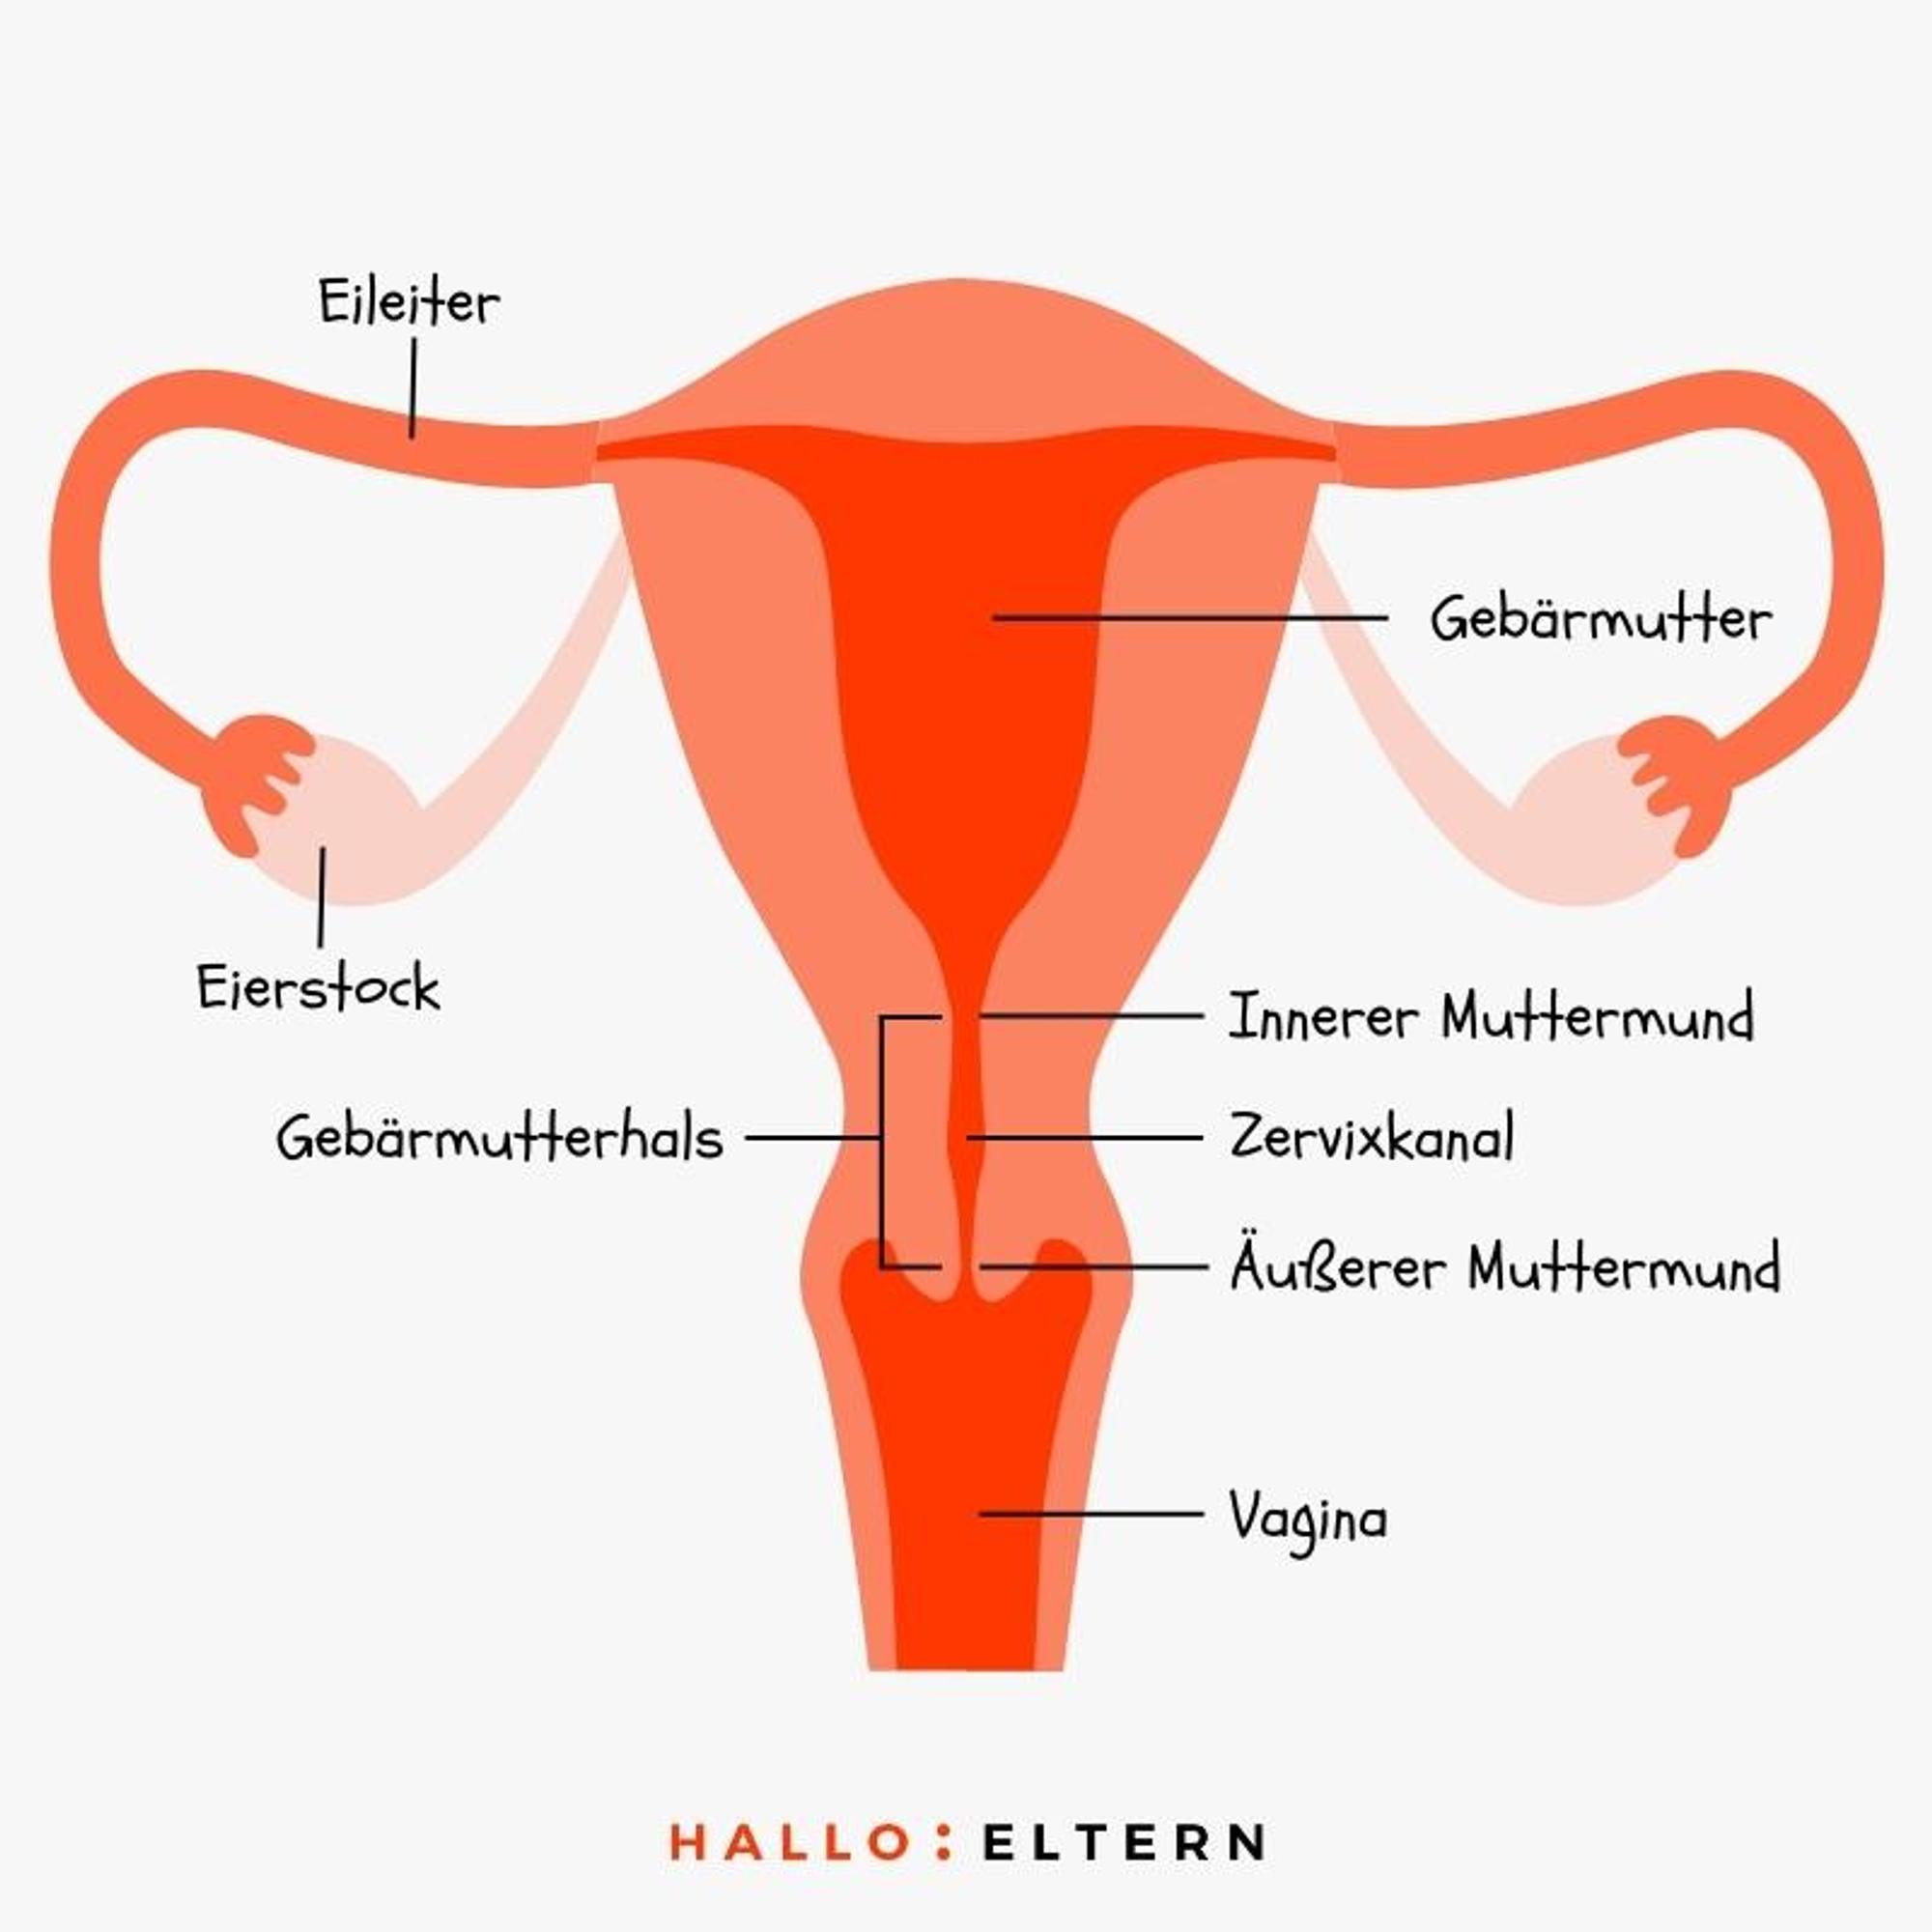 Anatomie des Muttermund